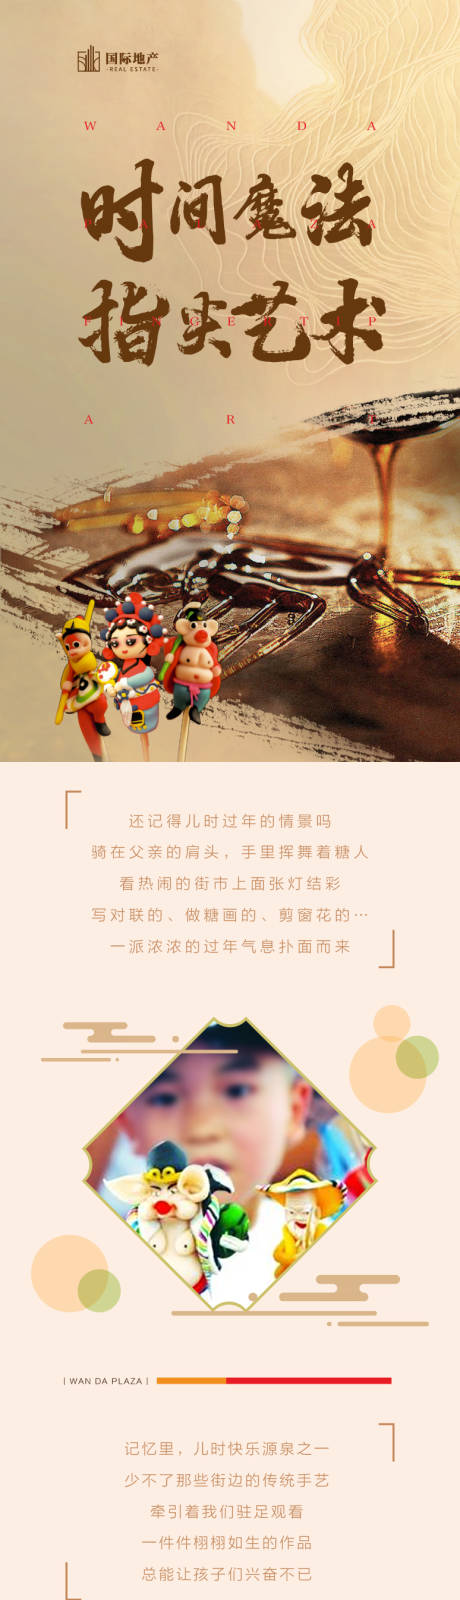 房地产捏糖人亲子中国活动传统文化海报